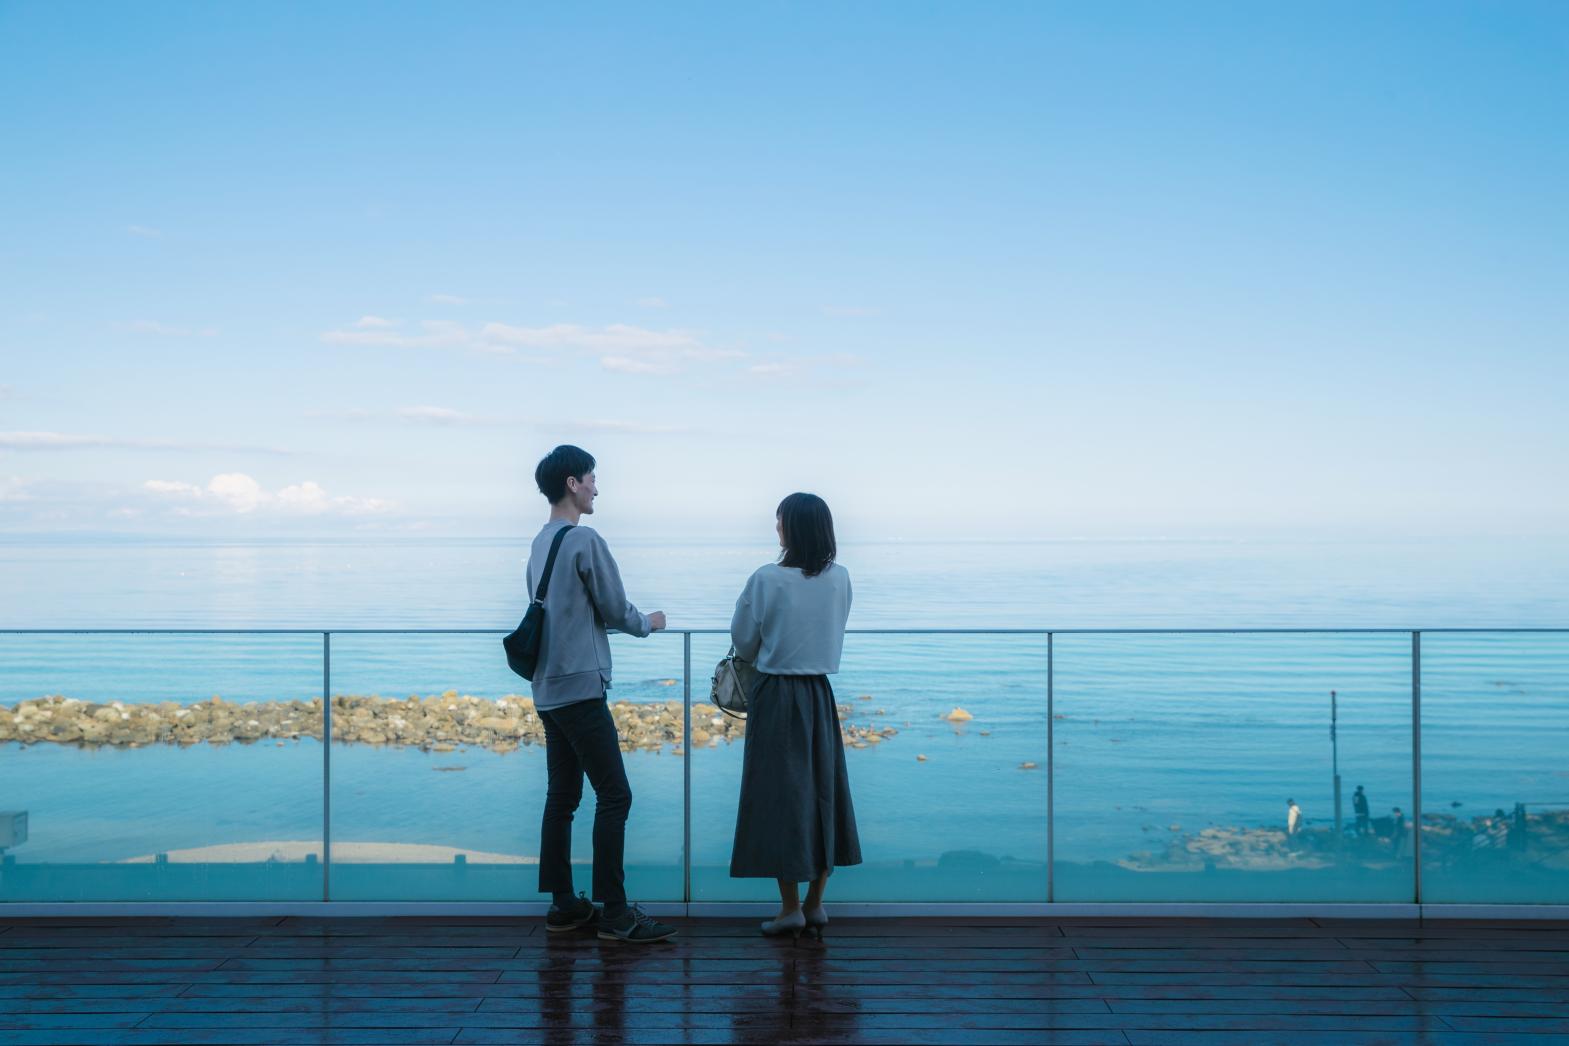 『道の駅 雨晴』の展望デッキからの眺め。雨晴海岸は「日本の渚百選」にも選ばれている。